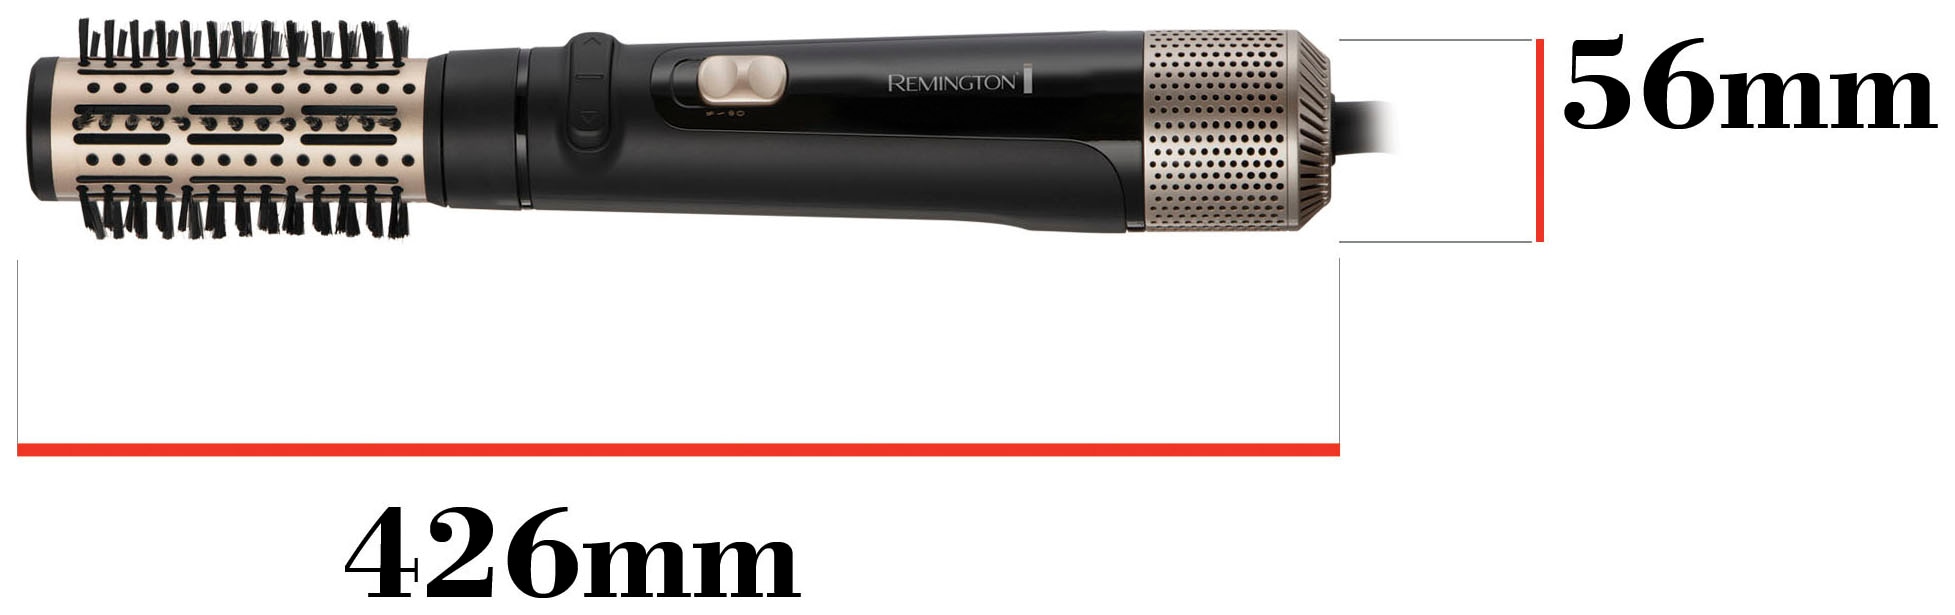 Remington Warmluftbürste »Blow Dry & Style AS7580«, 3 Aufsätze}, 1.000 Watt (rotierender Airstyler/Rund-& Lockenbürste) alle Haarlängen